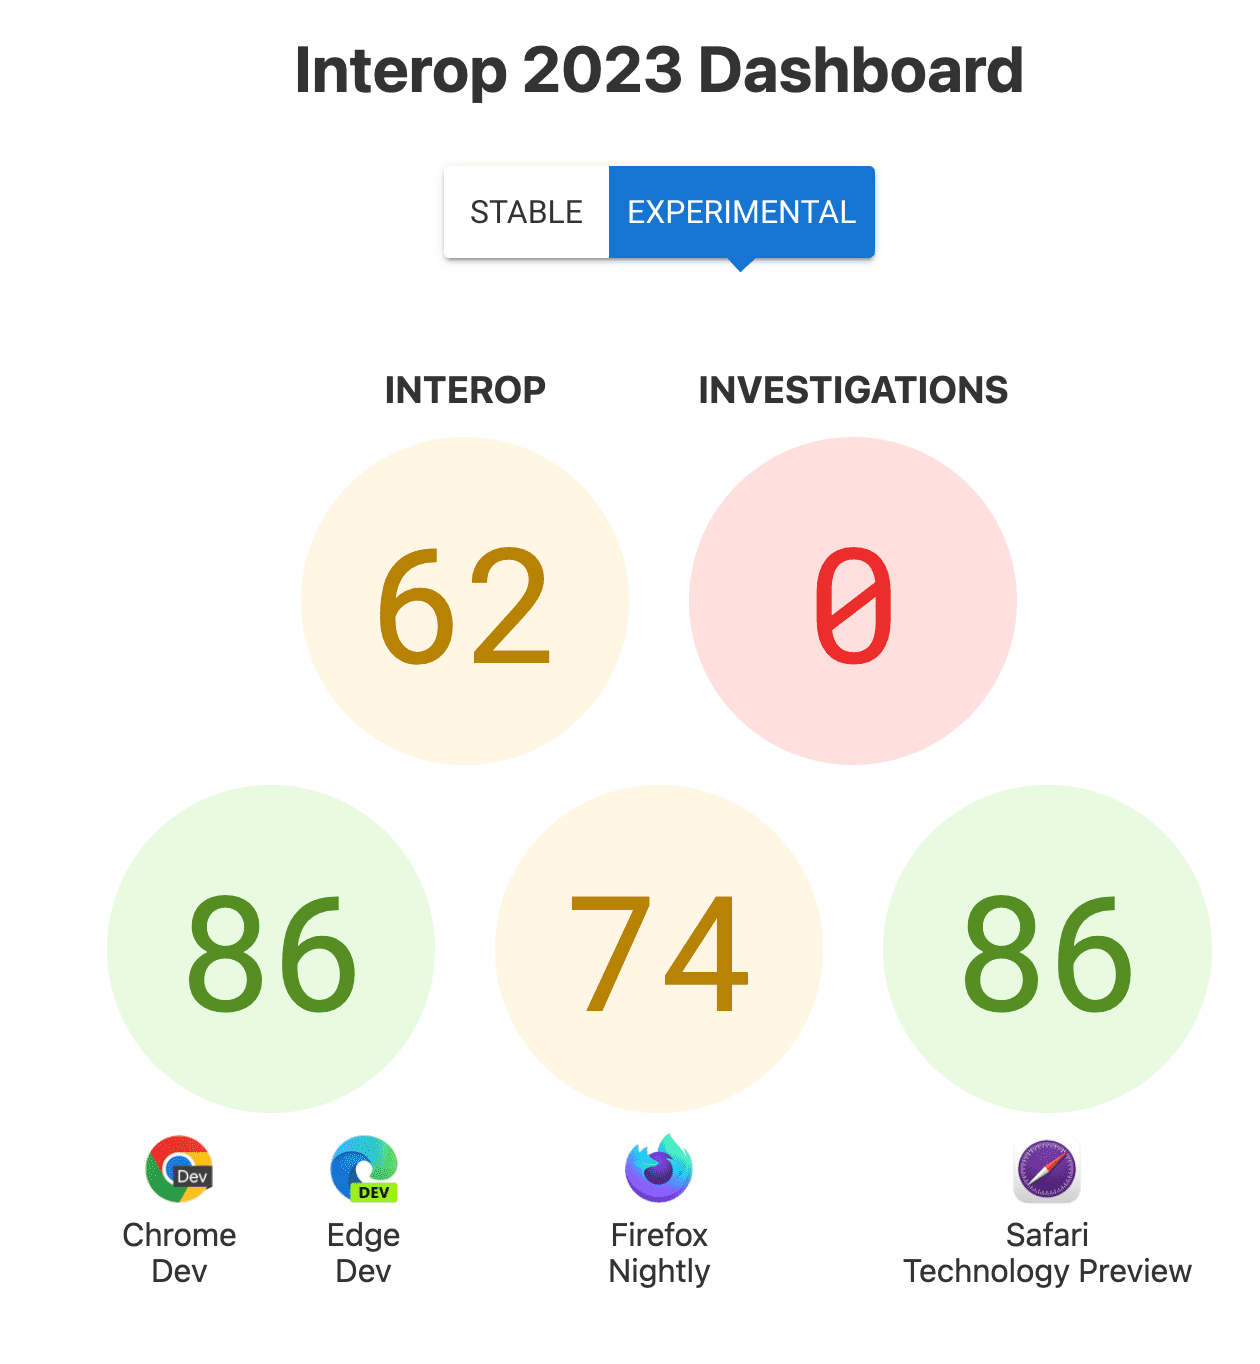 Las puntuaciones de Interoperabilidad en general: 62, Investigaciones: 0 y las puntuaciones por navegador: 86 para Chrome y Edge, 74 para Firefox, 86 para Safari Technology Preview.